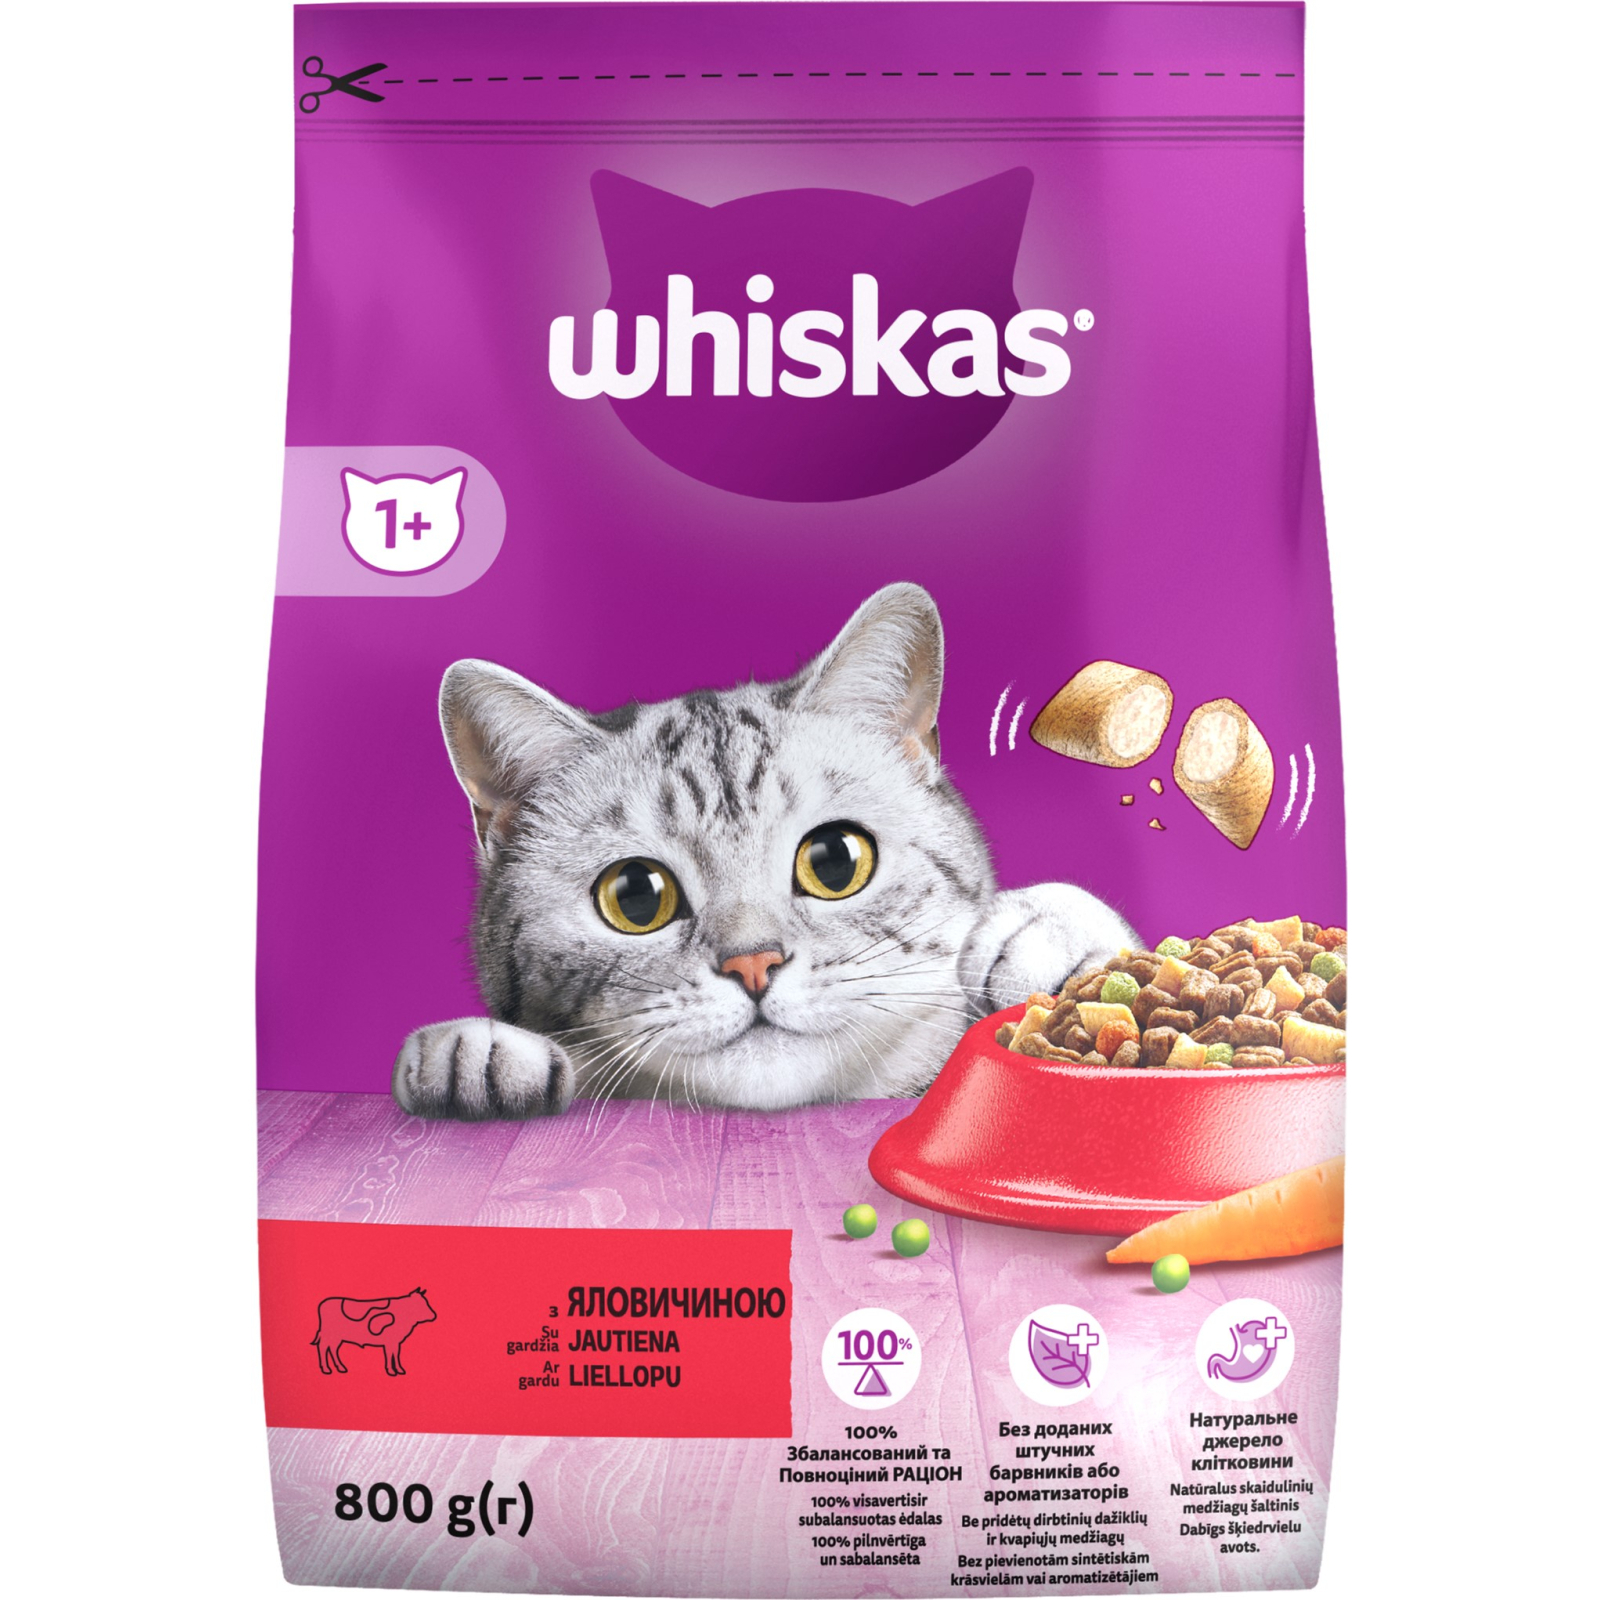 Сухой корм для кошек Whiskas с говядиной 14 кг (5900951014345)